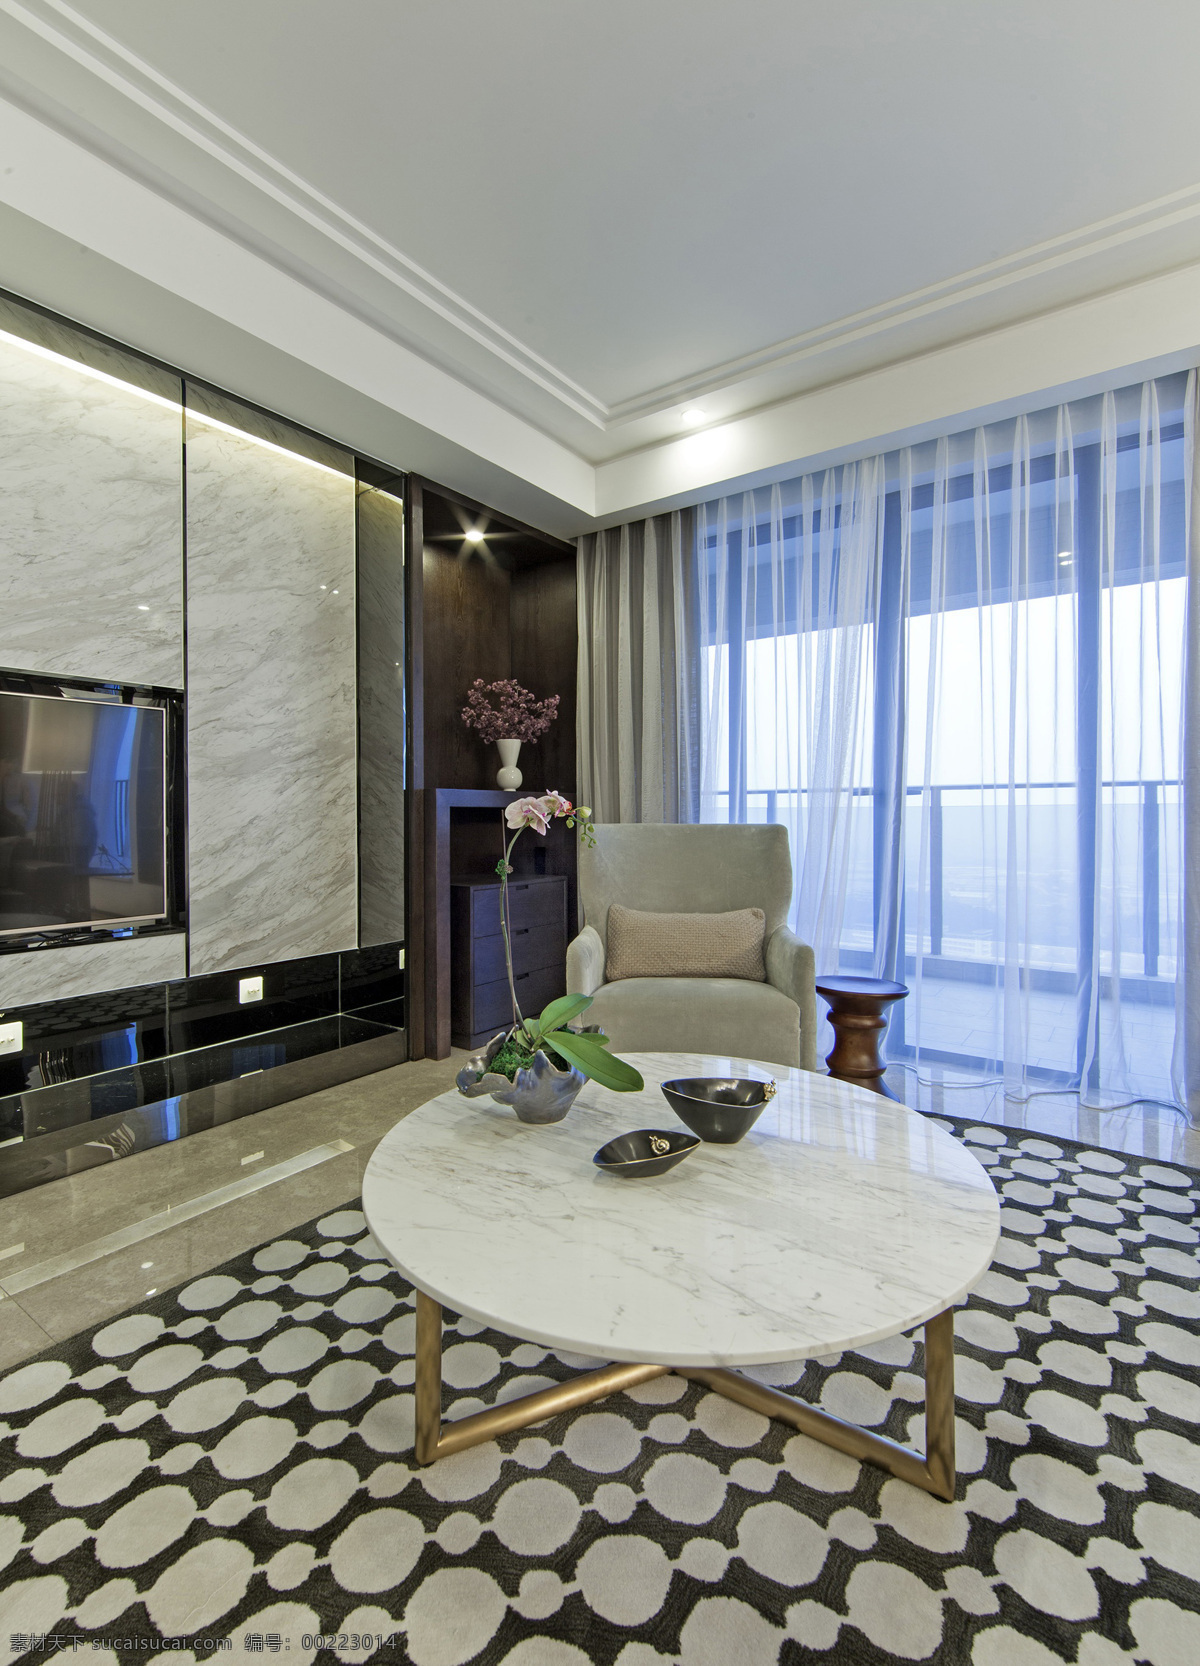 室内 客厅 现代 简约 装修 效果图 圆形茶几 格子地板 灰色 花纹 大理石 背景 墙 白色灯光